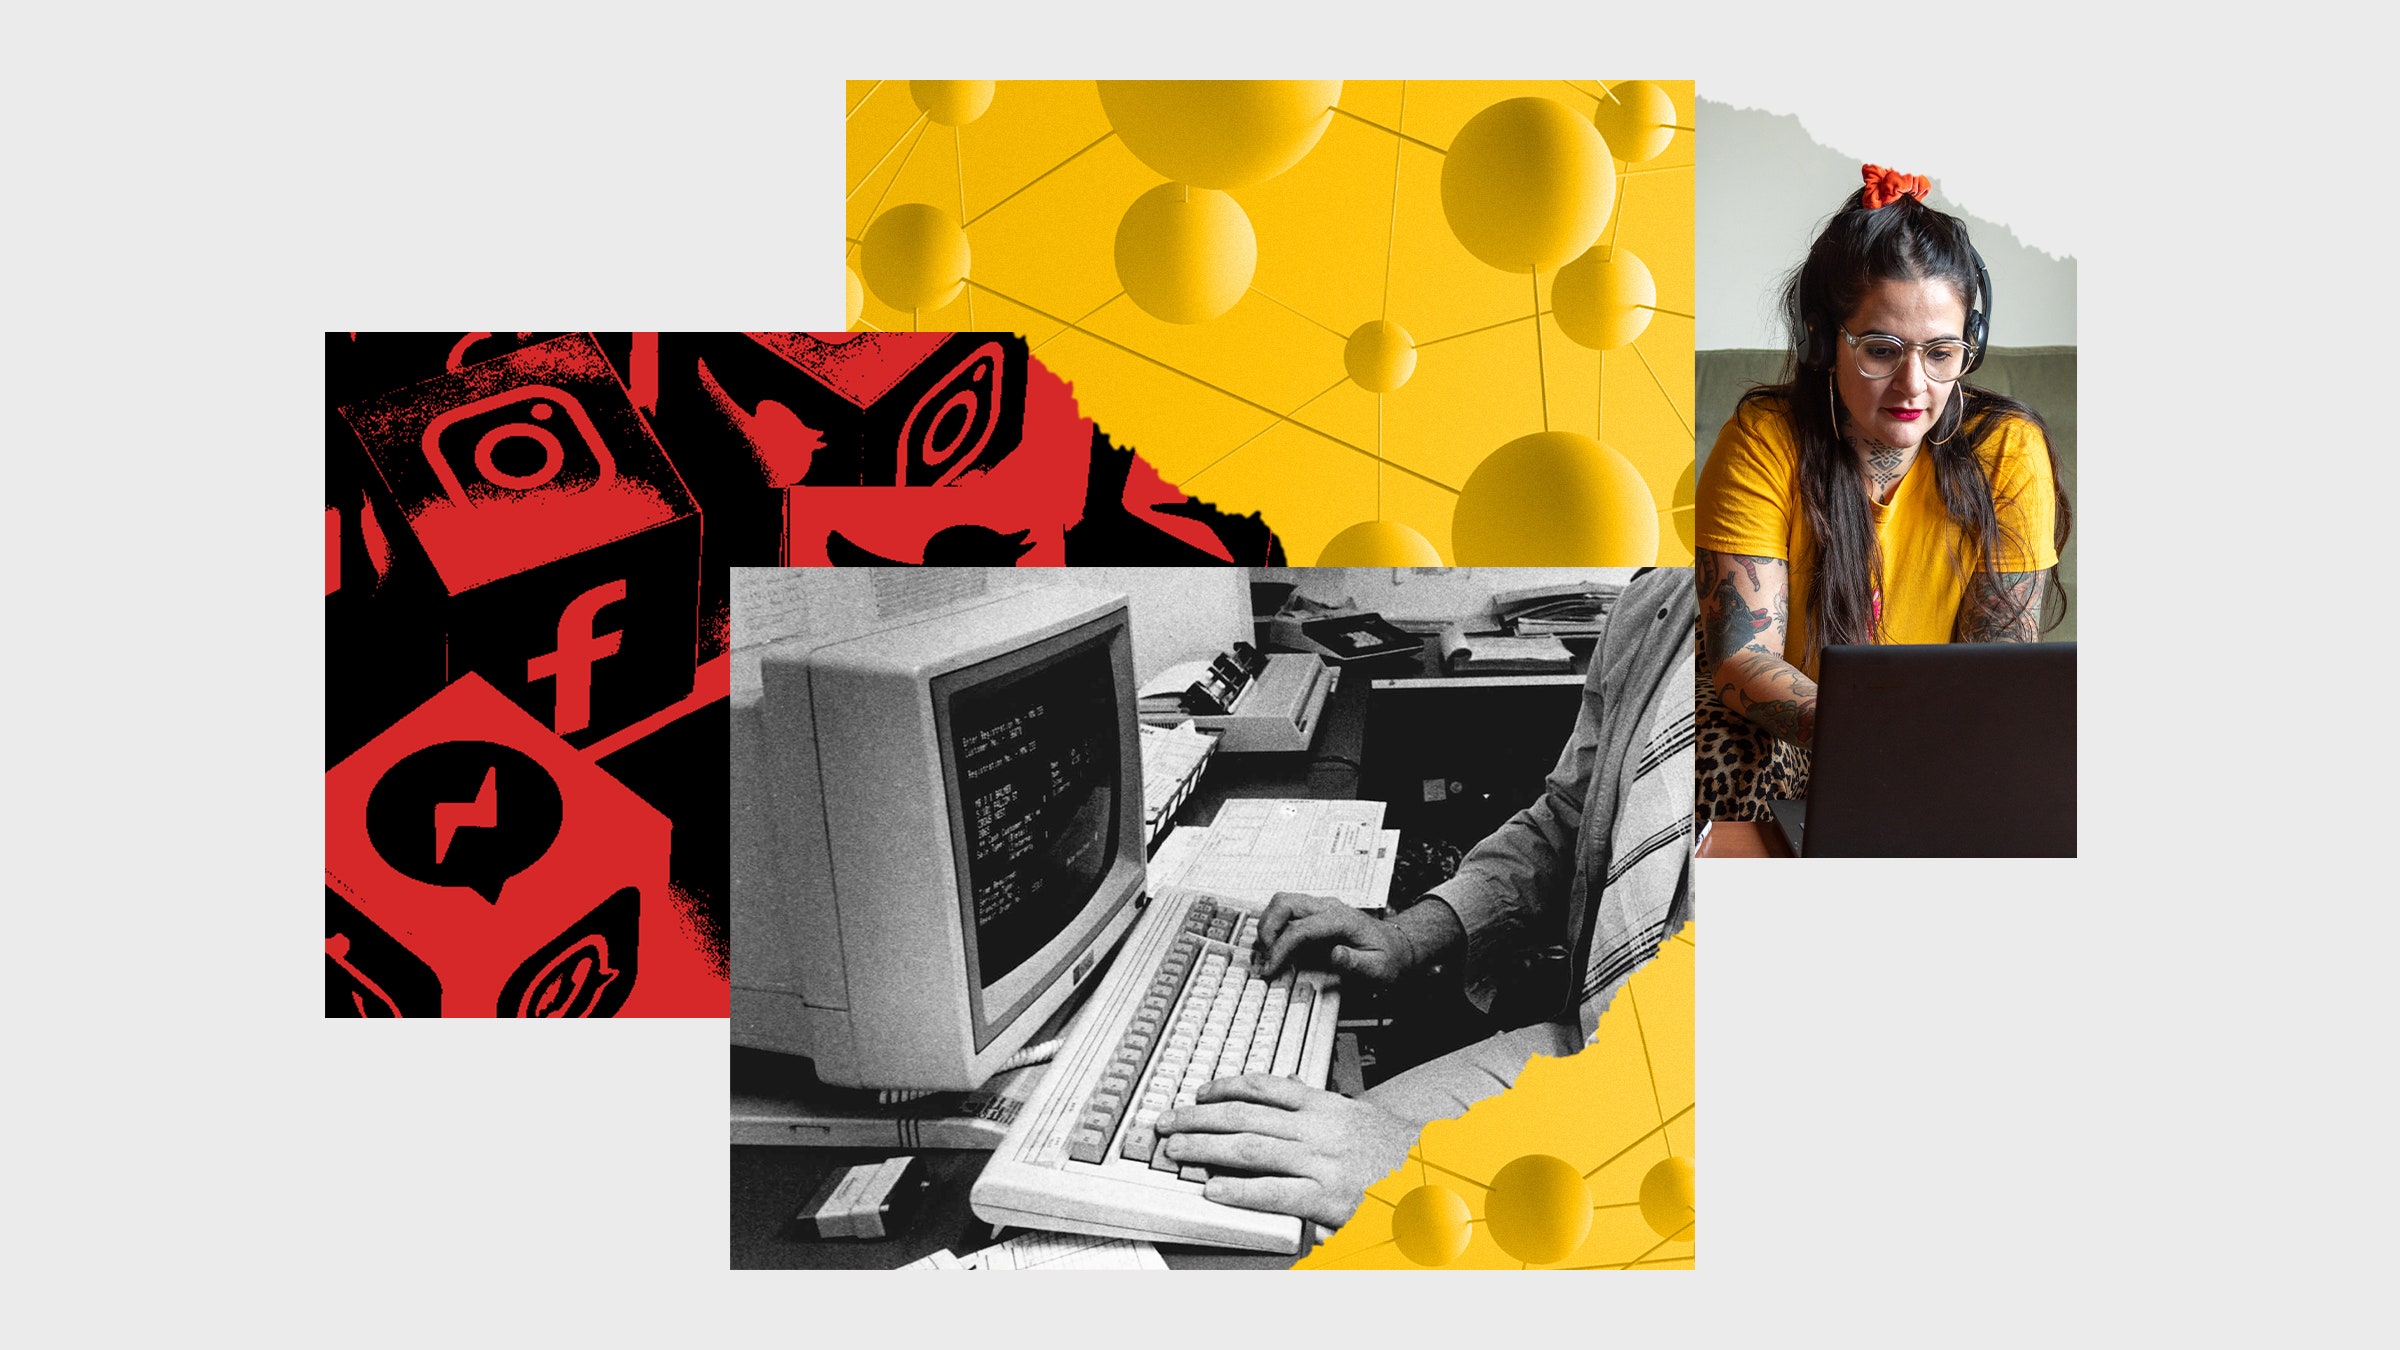 Colagem de fotos representando um computador dos anos 80, uma pessoa em um laptop e ícones de redes sociais